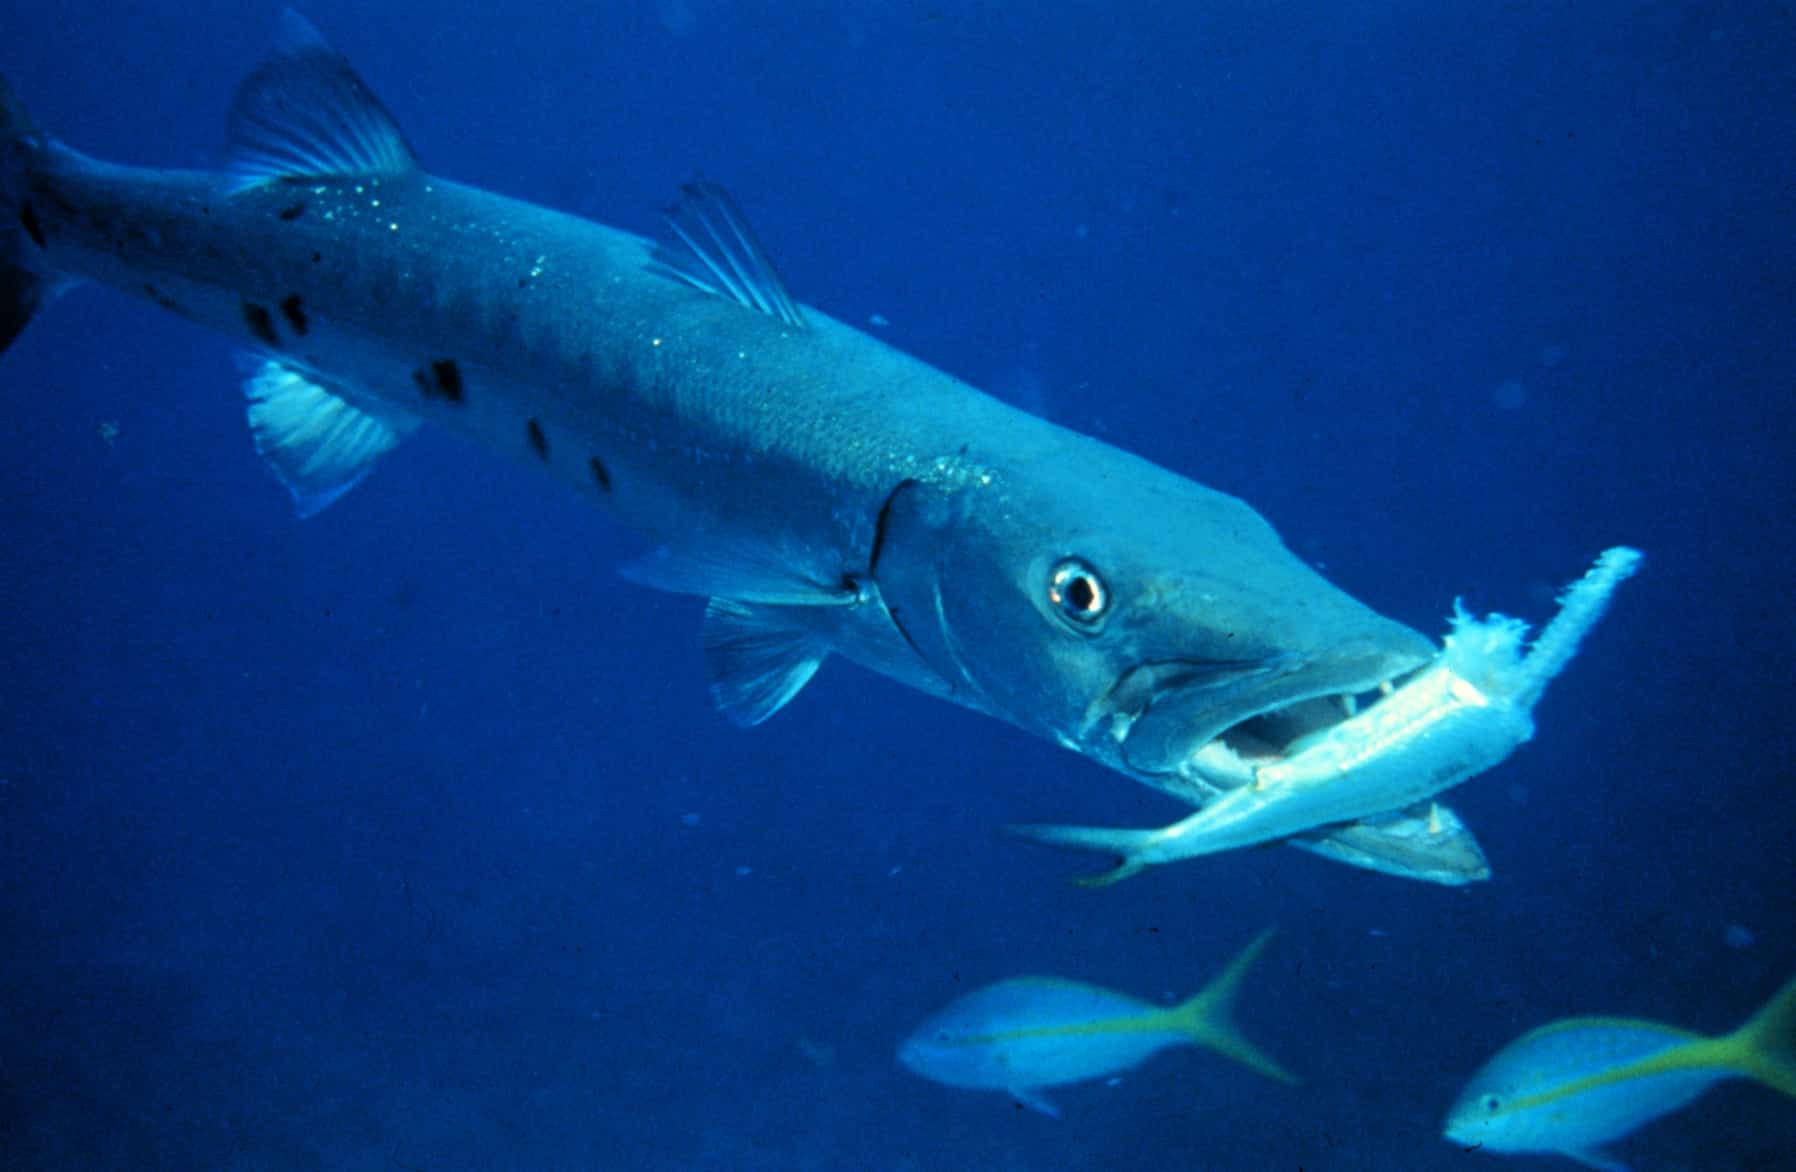 Barracuda with prey